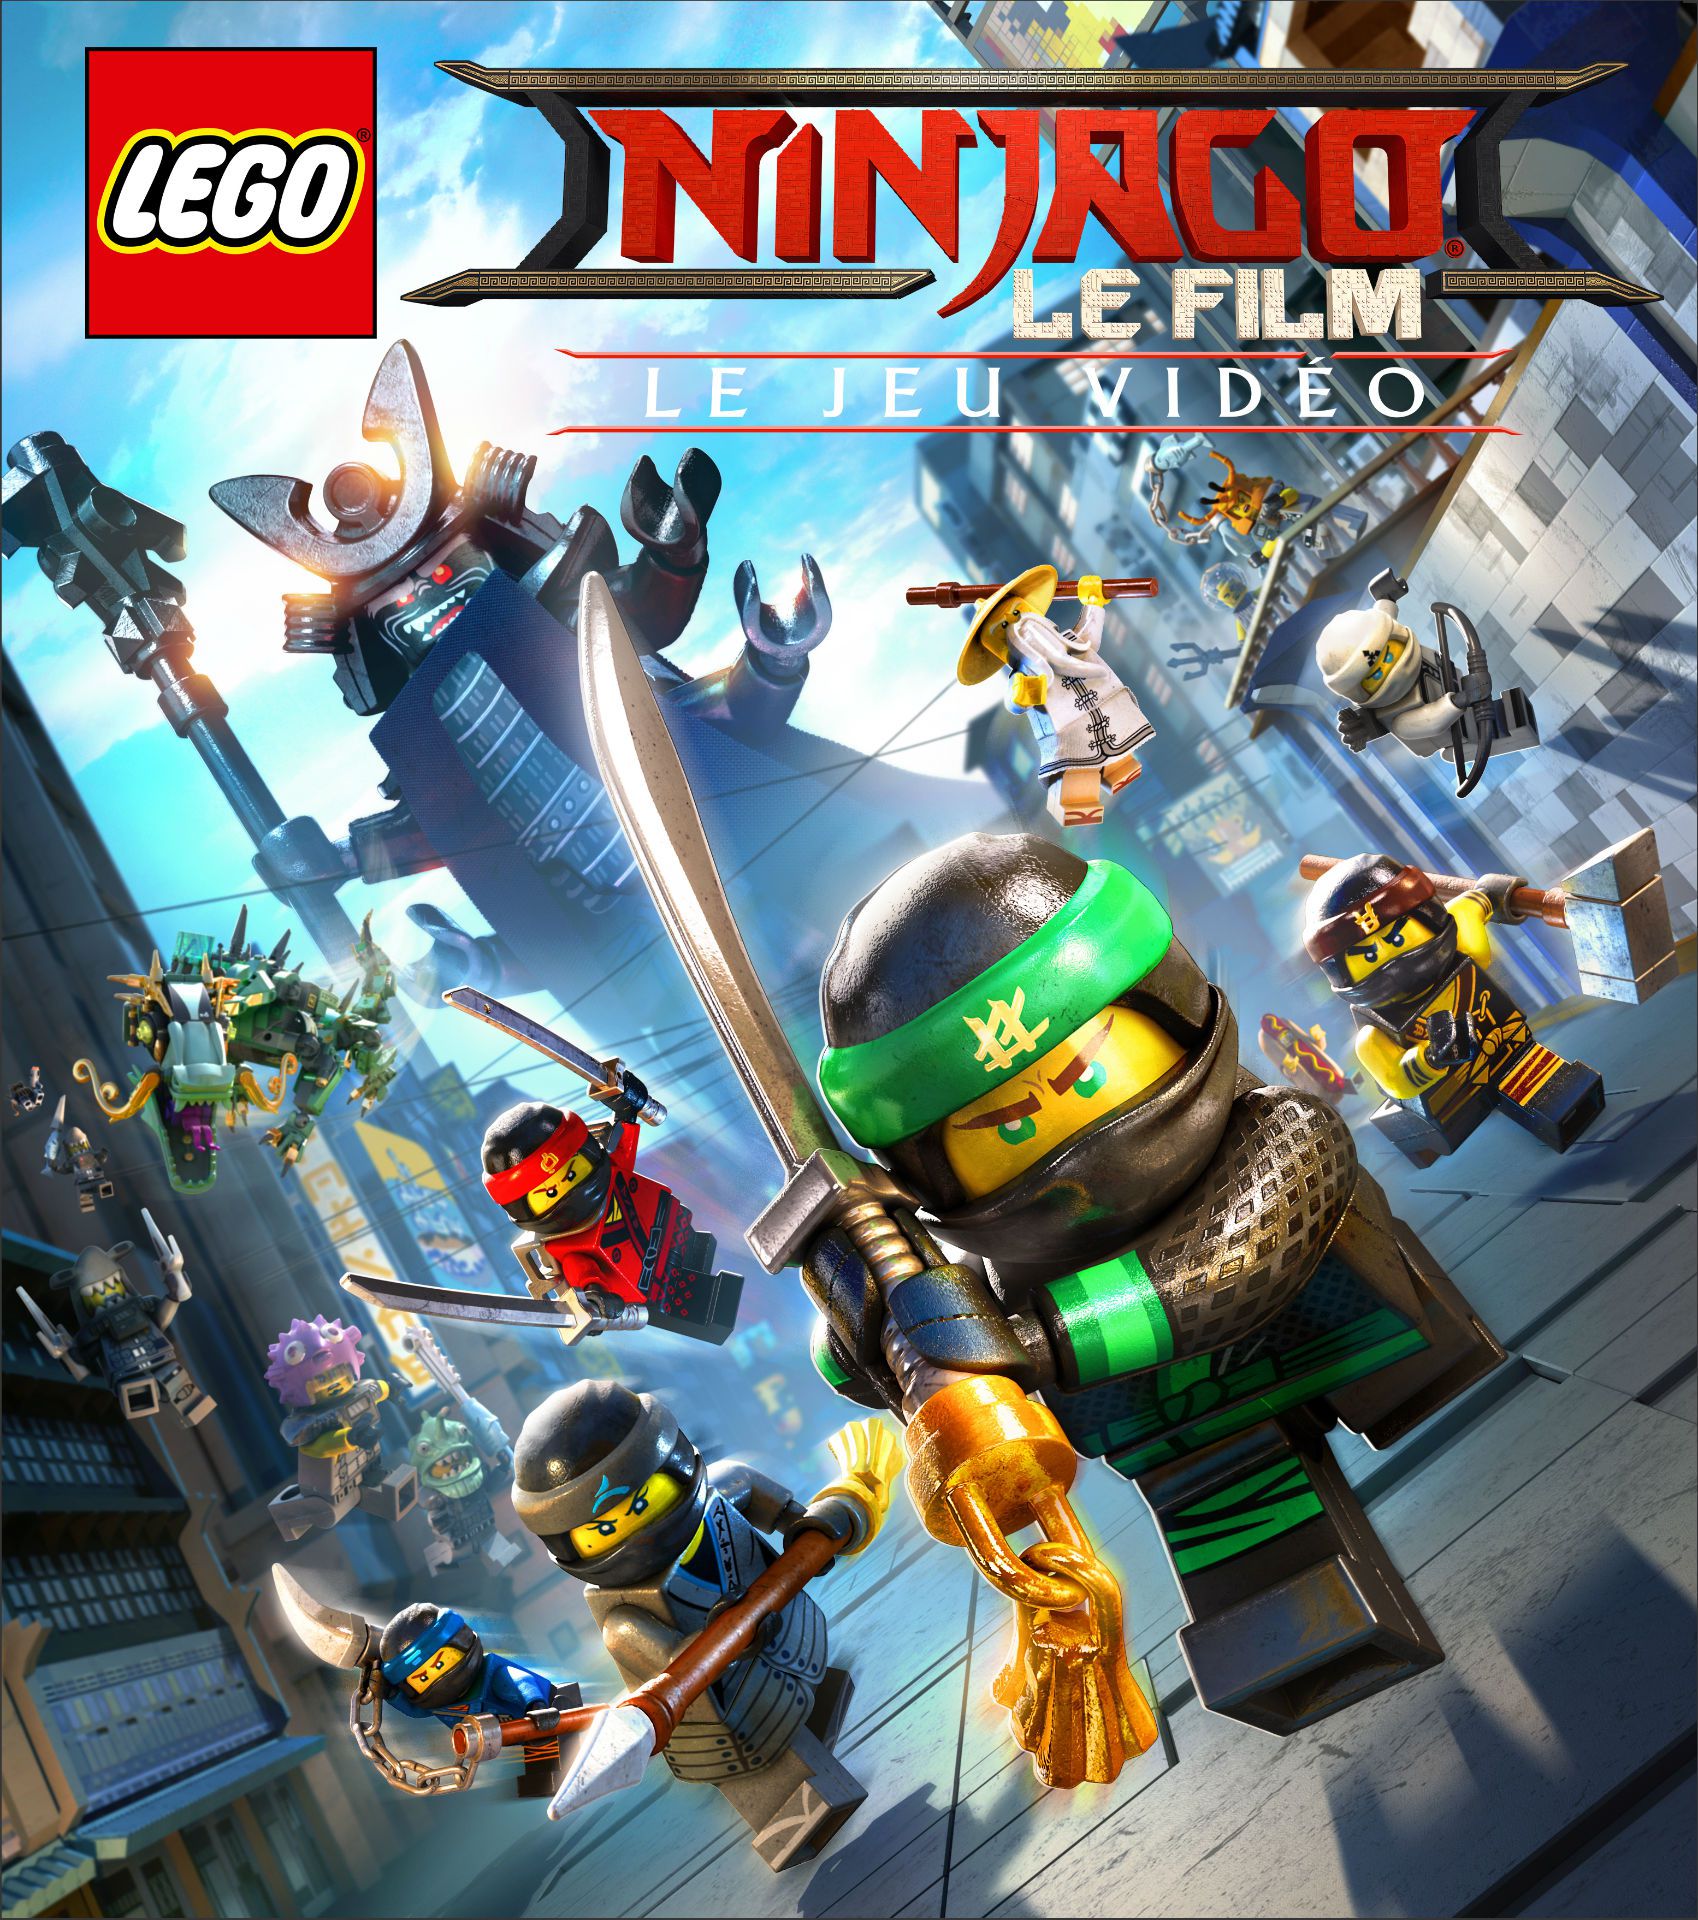 LEGO Ninjago, le film : le jeu vidéo (2017)  - Jeu vidéo streaming VF gratuit complet